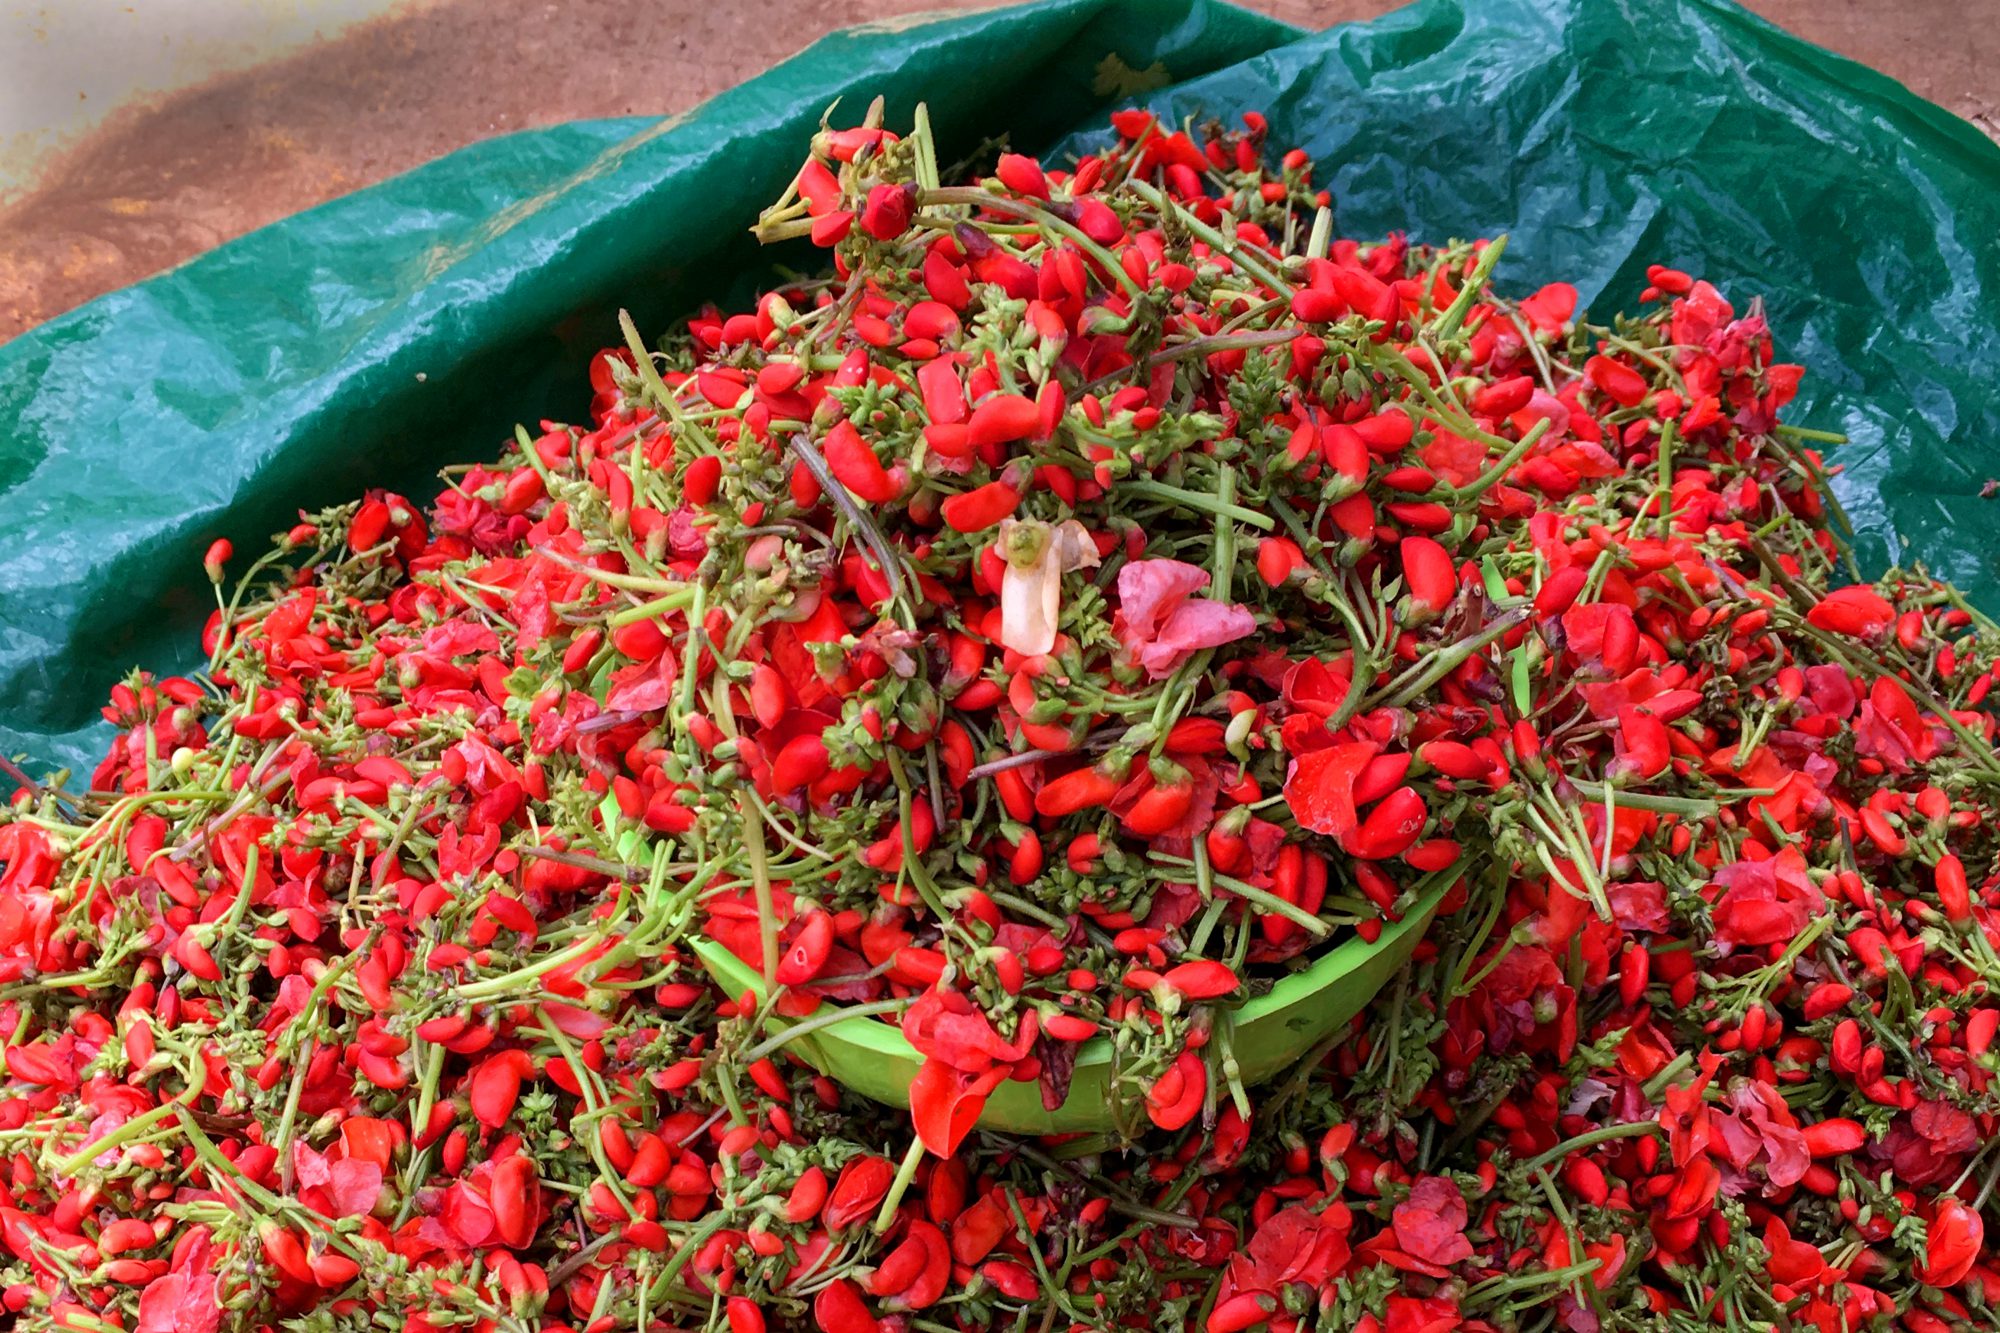 Flor de bótil for sale at market in San Cristóbal de las Casas, Chiapas.